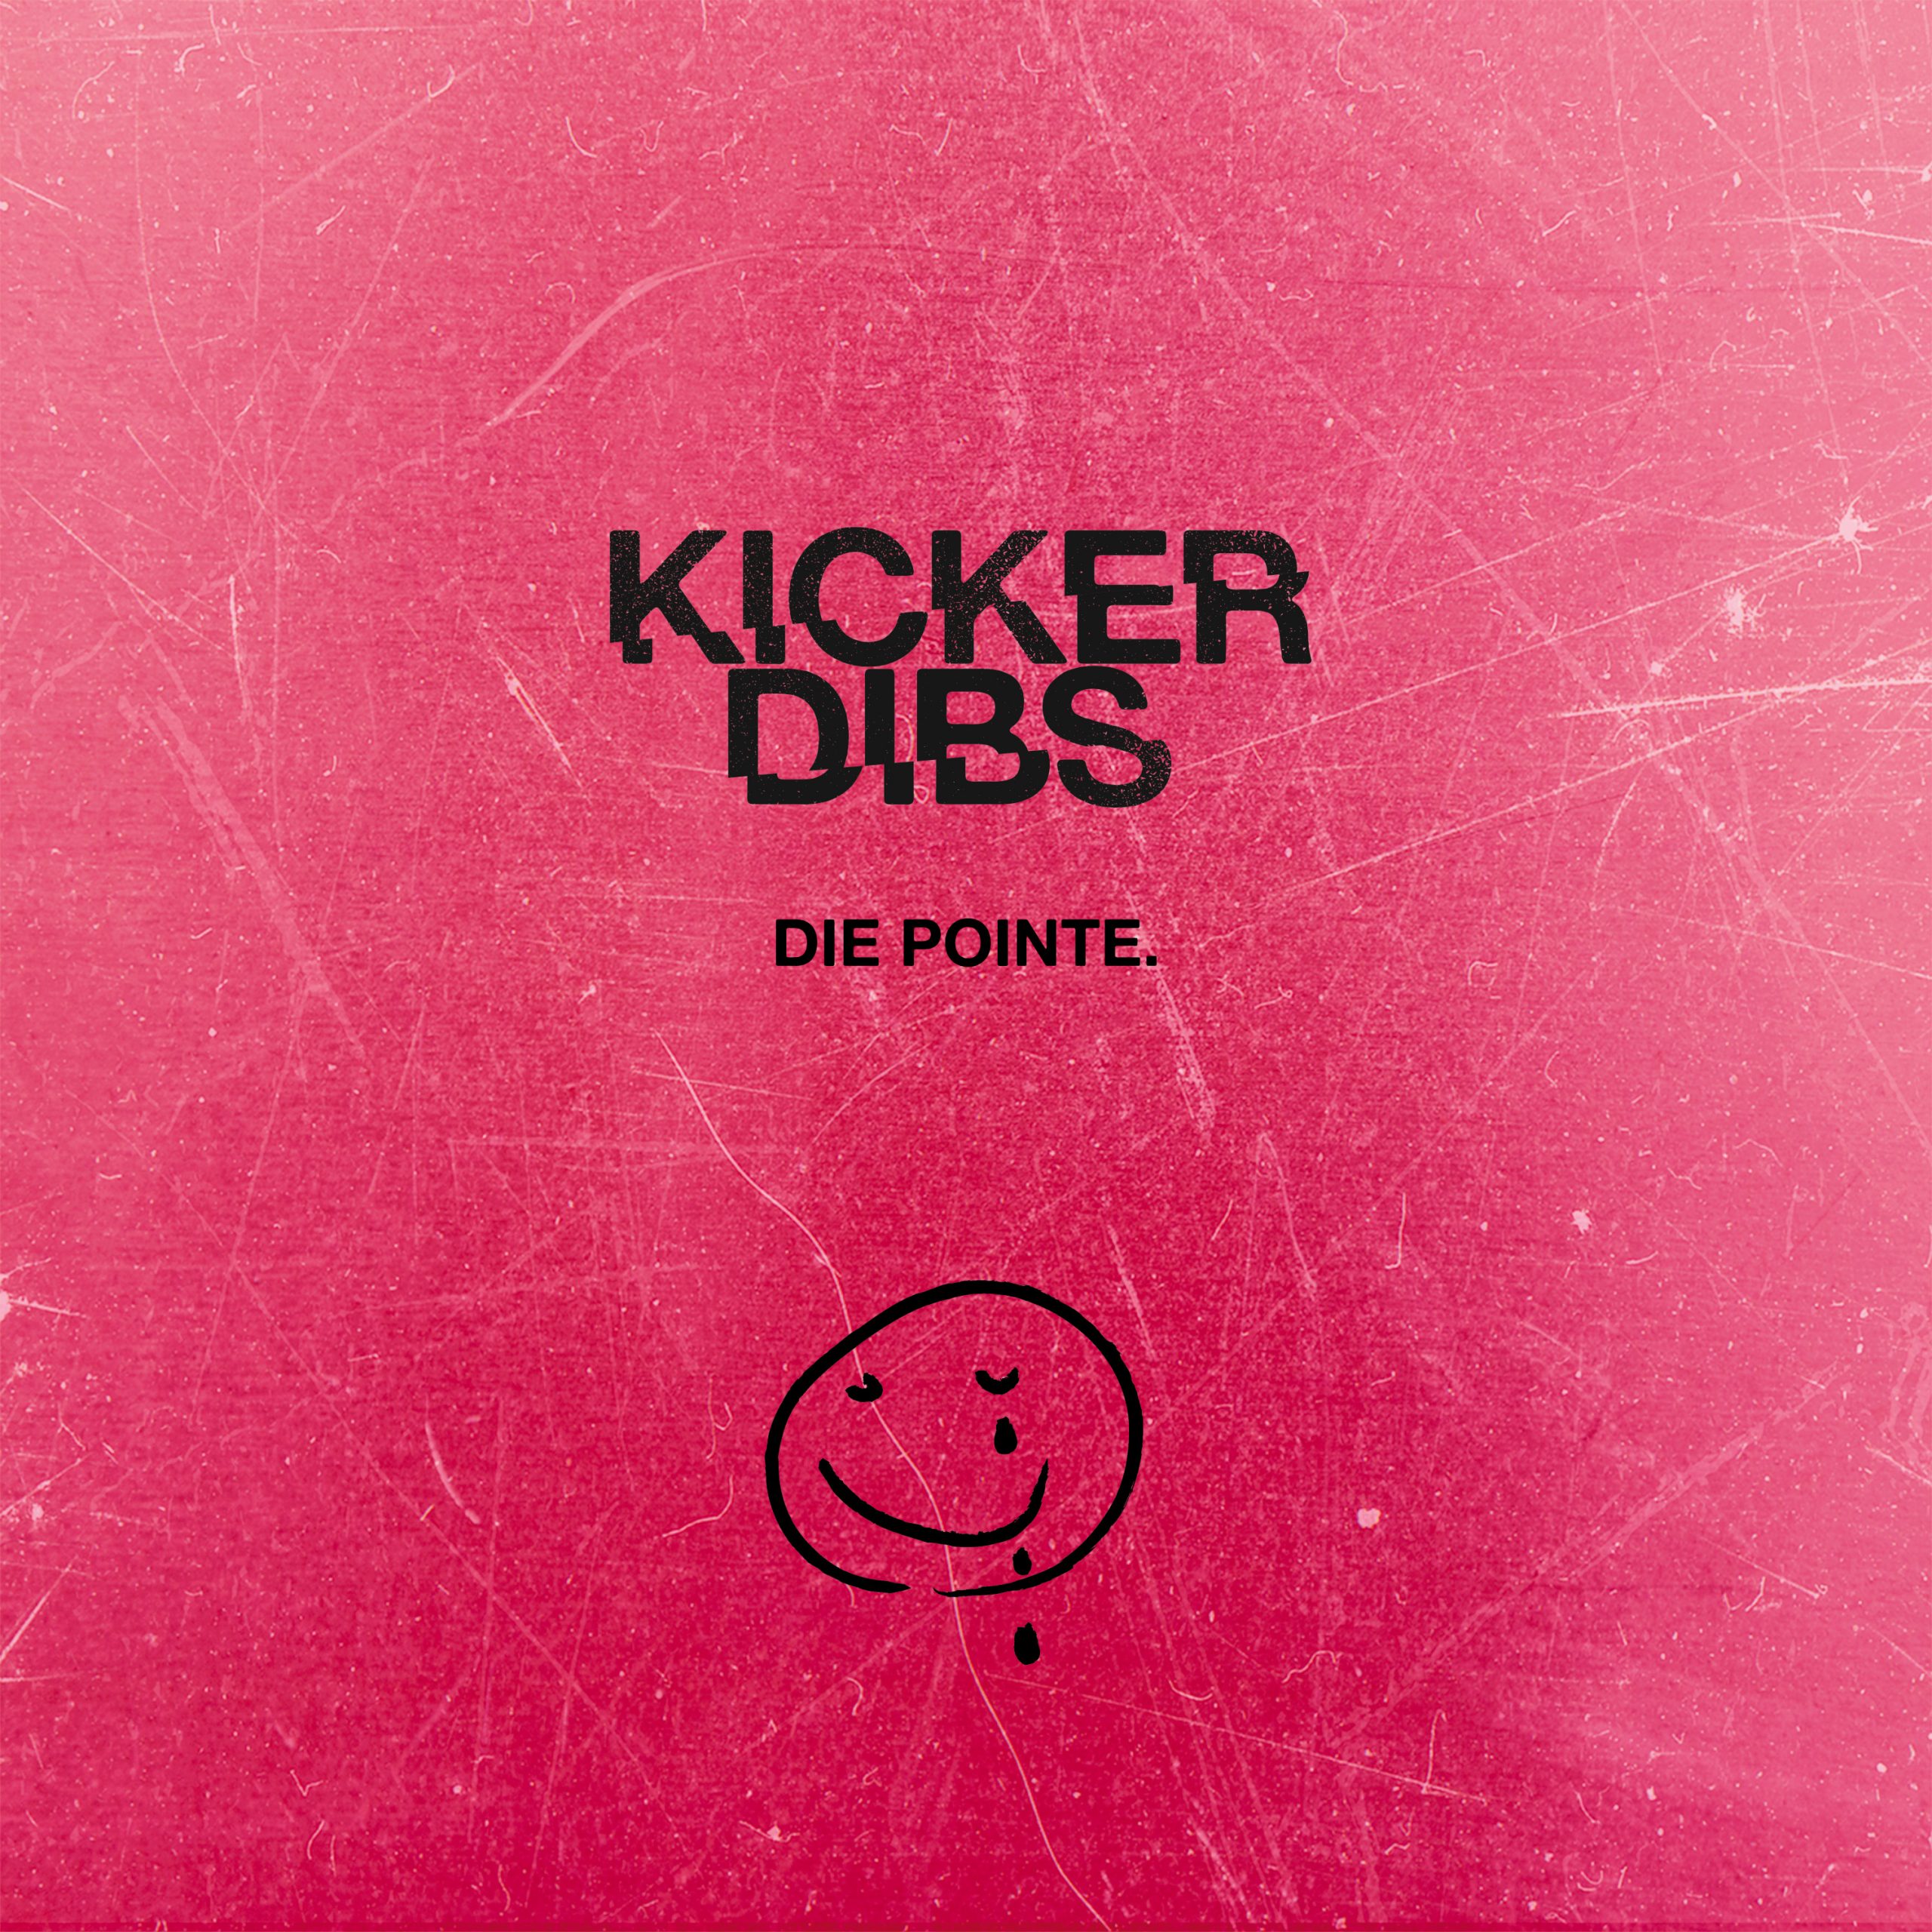 kicker-dibs-veroeffentlichen-neues-album-die-pointe